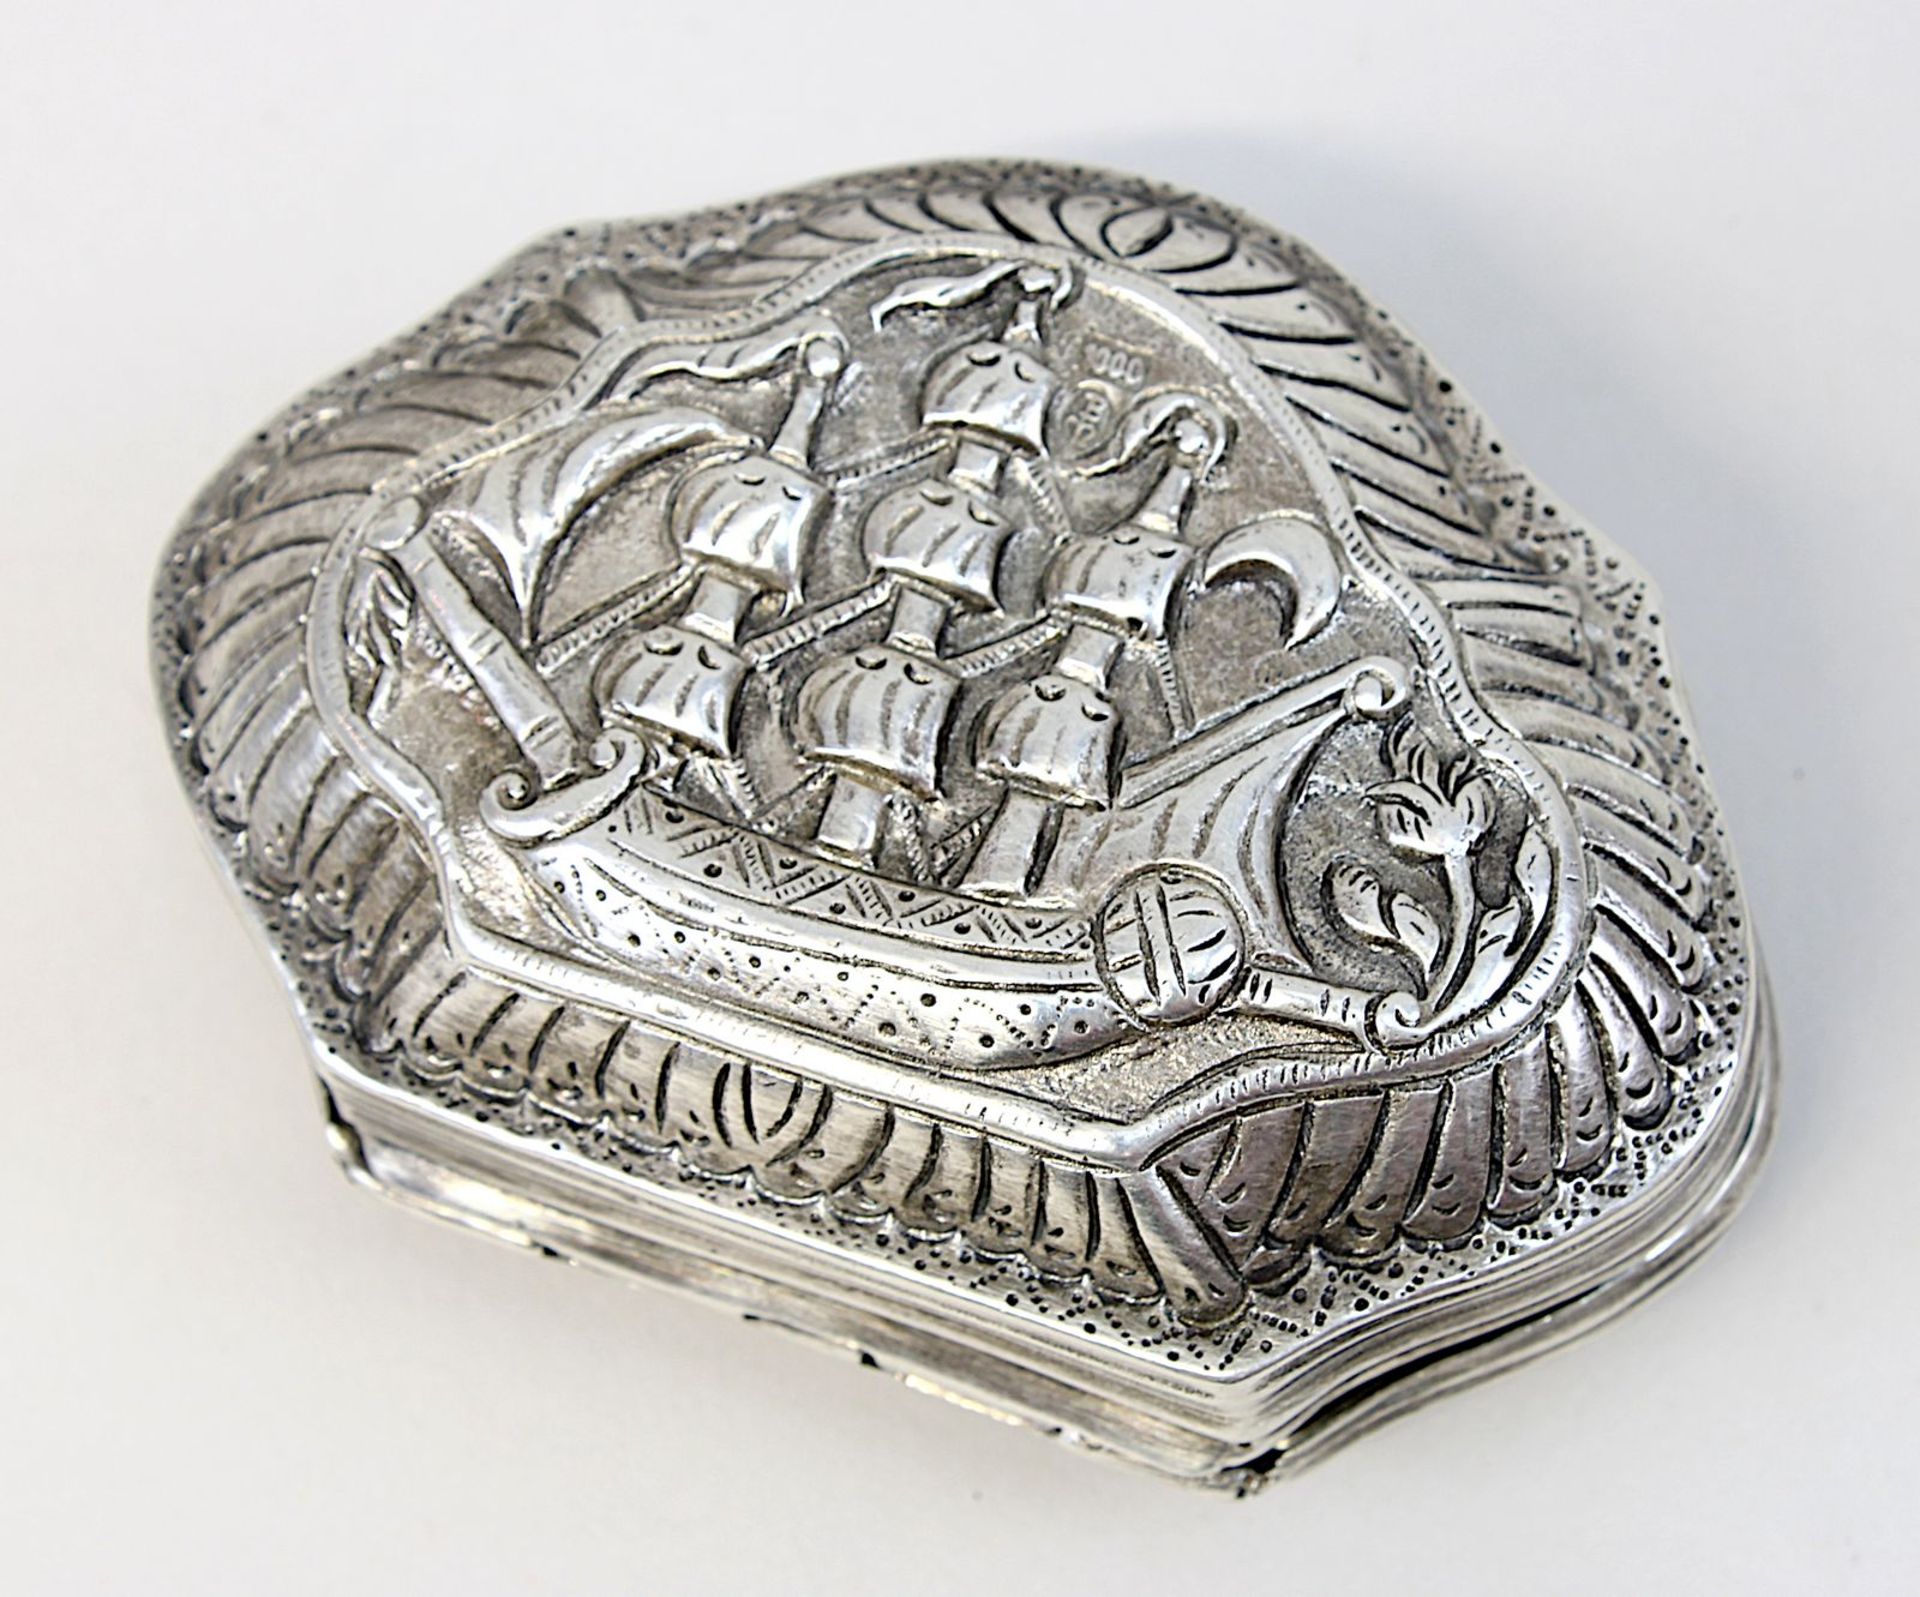 Silberdose mit Vogel- und Schiffsmotiv, geschweifte Form mit anscharniertem Deckel, getriebener